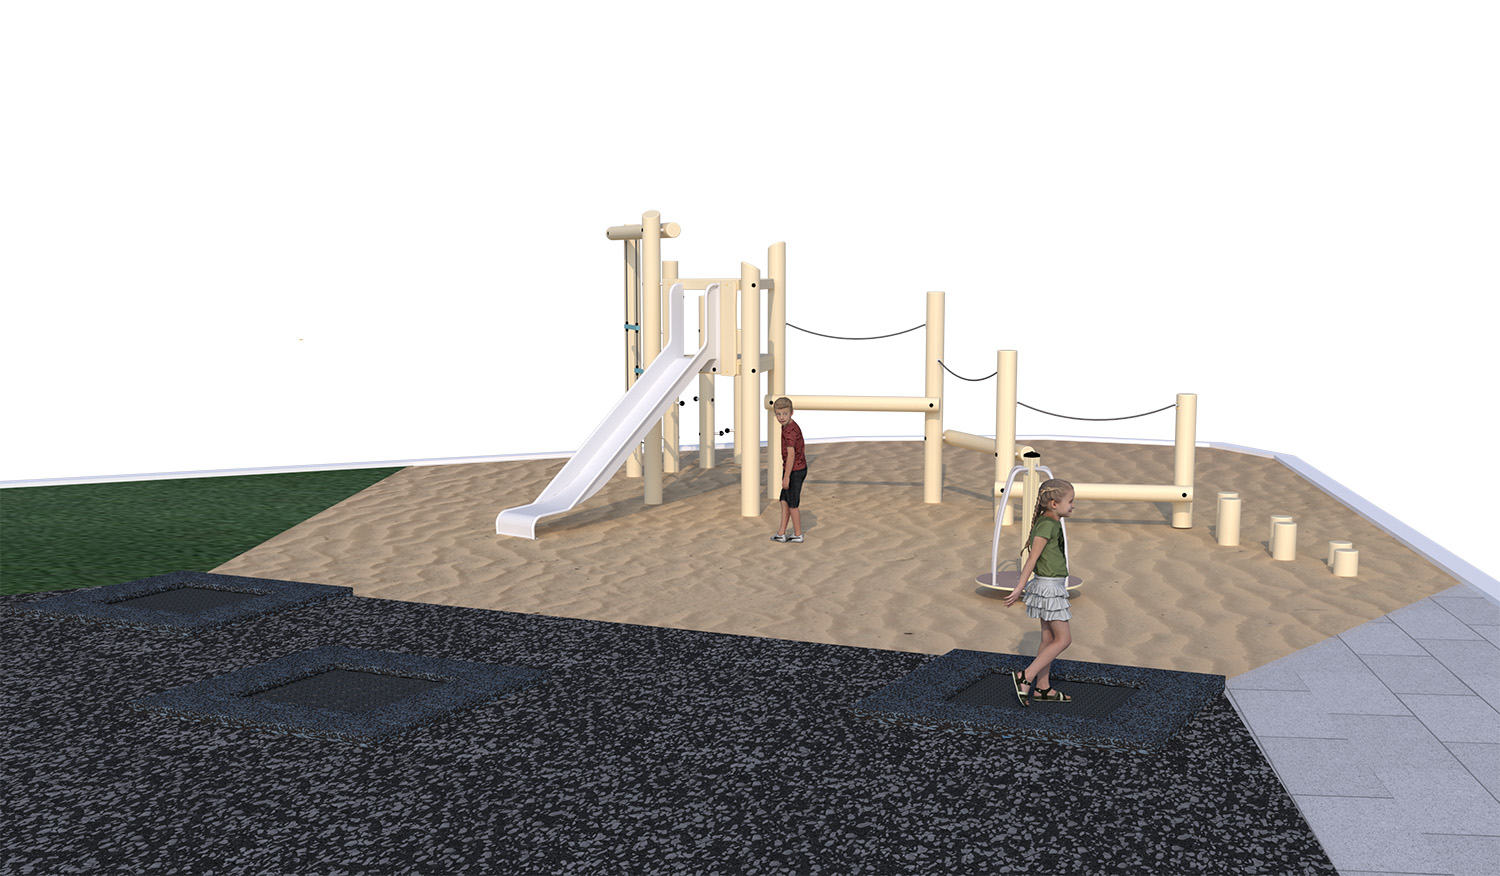 проект обустройства детской площадки проектирование дворовых пространств